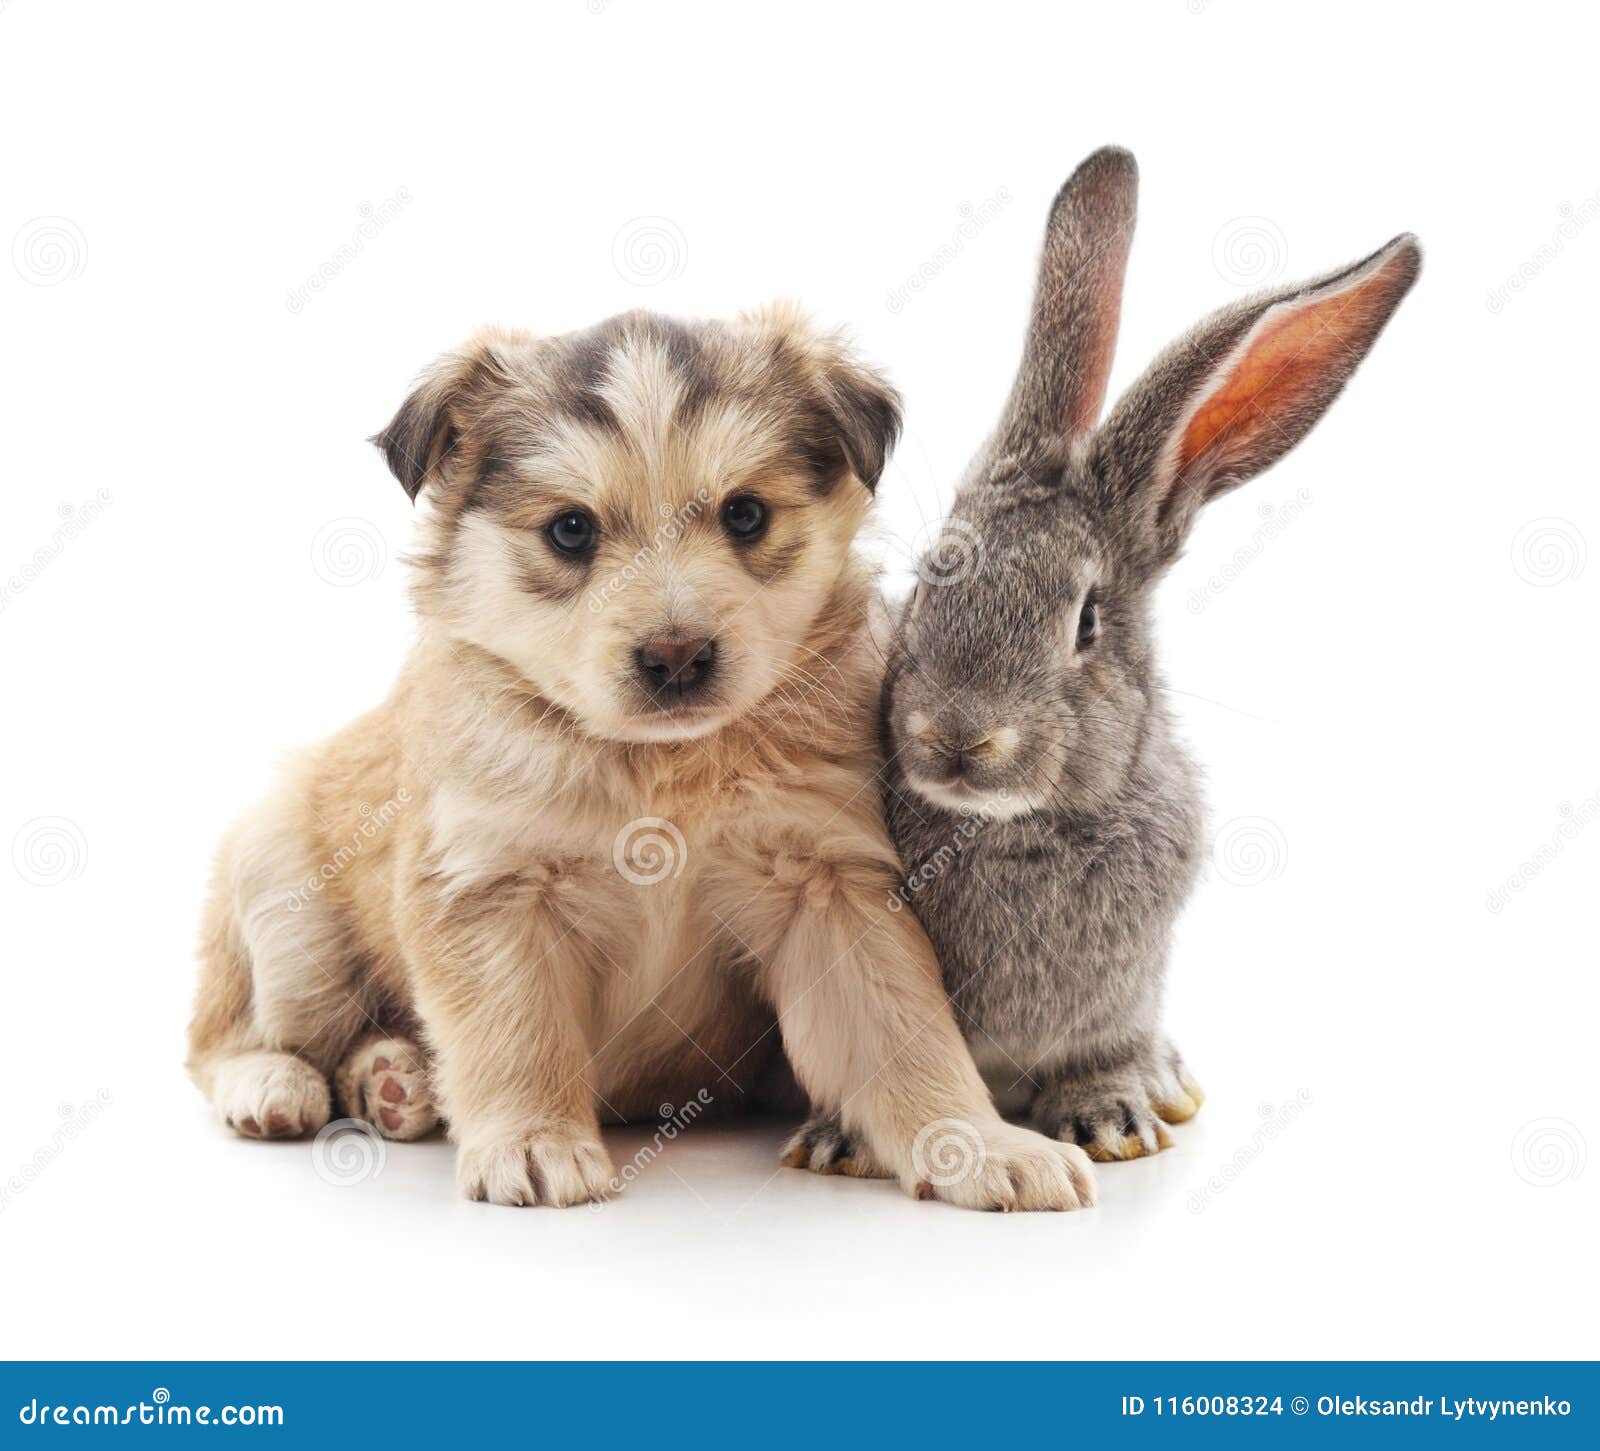 可爱的白兔和小狗电脑壁纸桌面-壁纸下载-www.pp3.cn